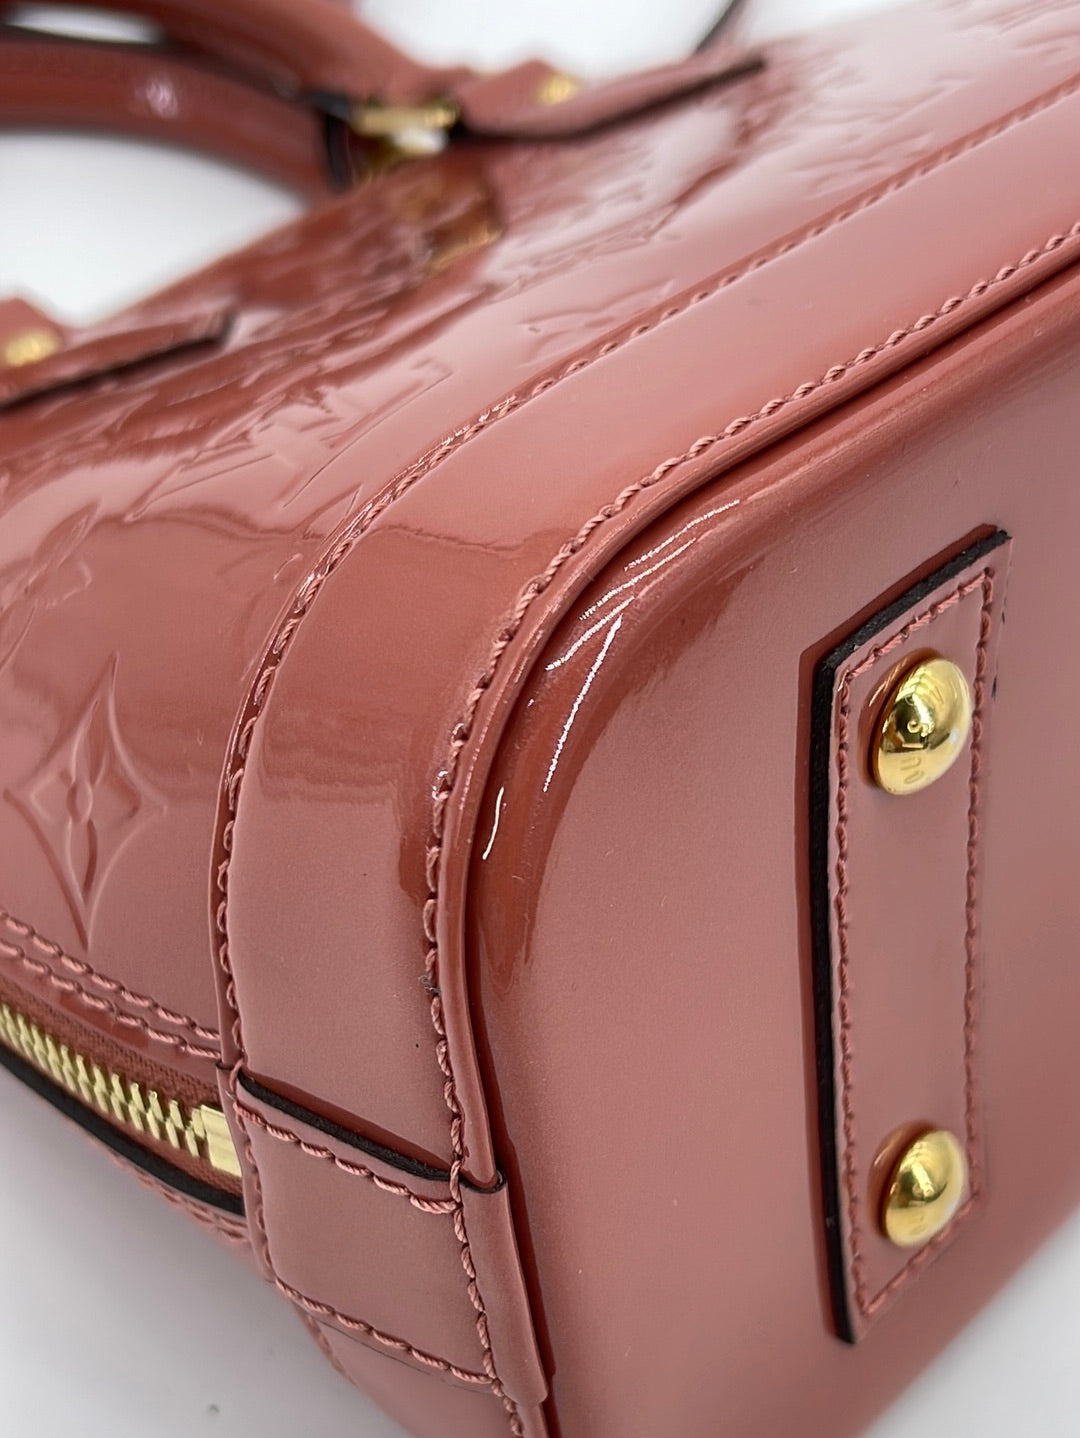 Louis Vuitton Alma Handbag 382188